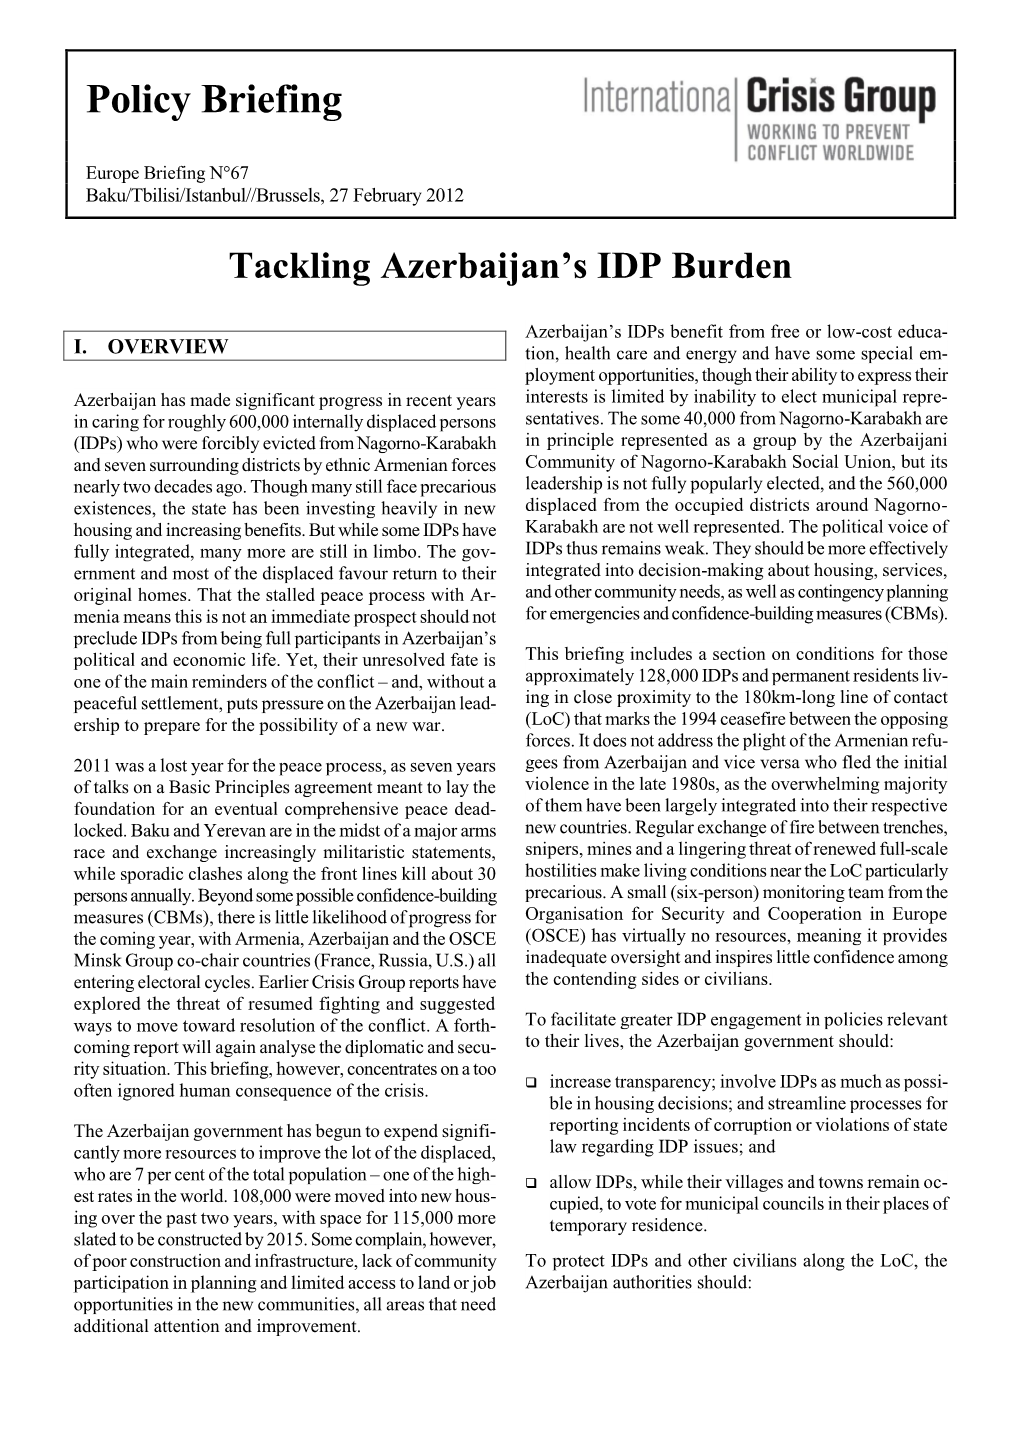 Tackling Azerbaijan's IDP Burden